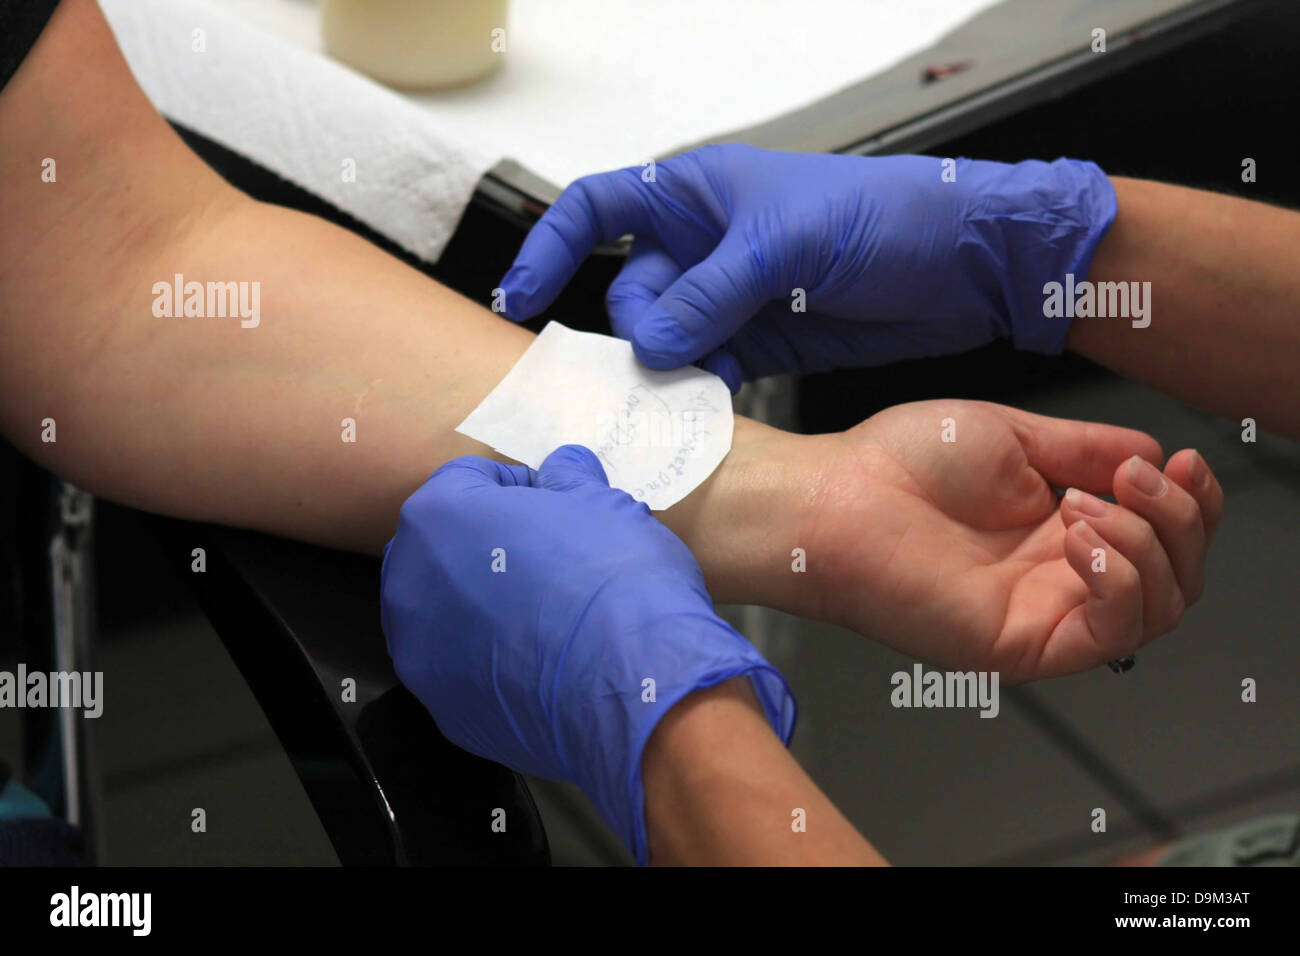 Personne en préparation avec pochoir pour obtenir un tatouage sur le poignet gauche, l'artiste portant des gants bleu Banque D'Images